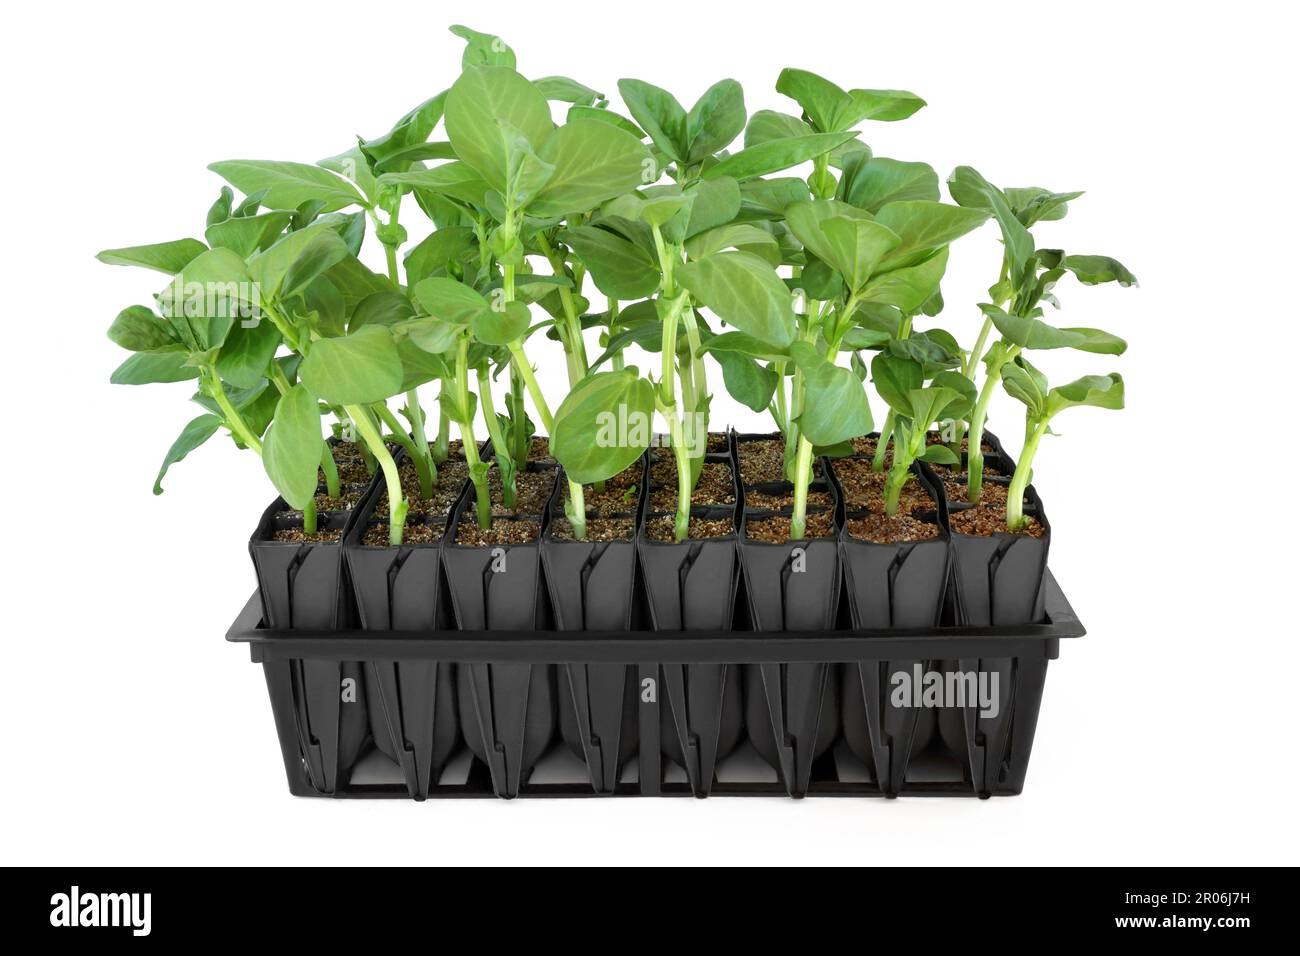 Pflanzen mit breiten Bohnen wachsen im Wurzeltrainer, um vor dem Auspflanzen Wachstum zu entwickeln. Senkrechtes Modul aus schwarzem Kunststoff auf weißem Hintergrund. Stockfoto